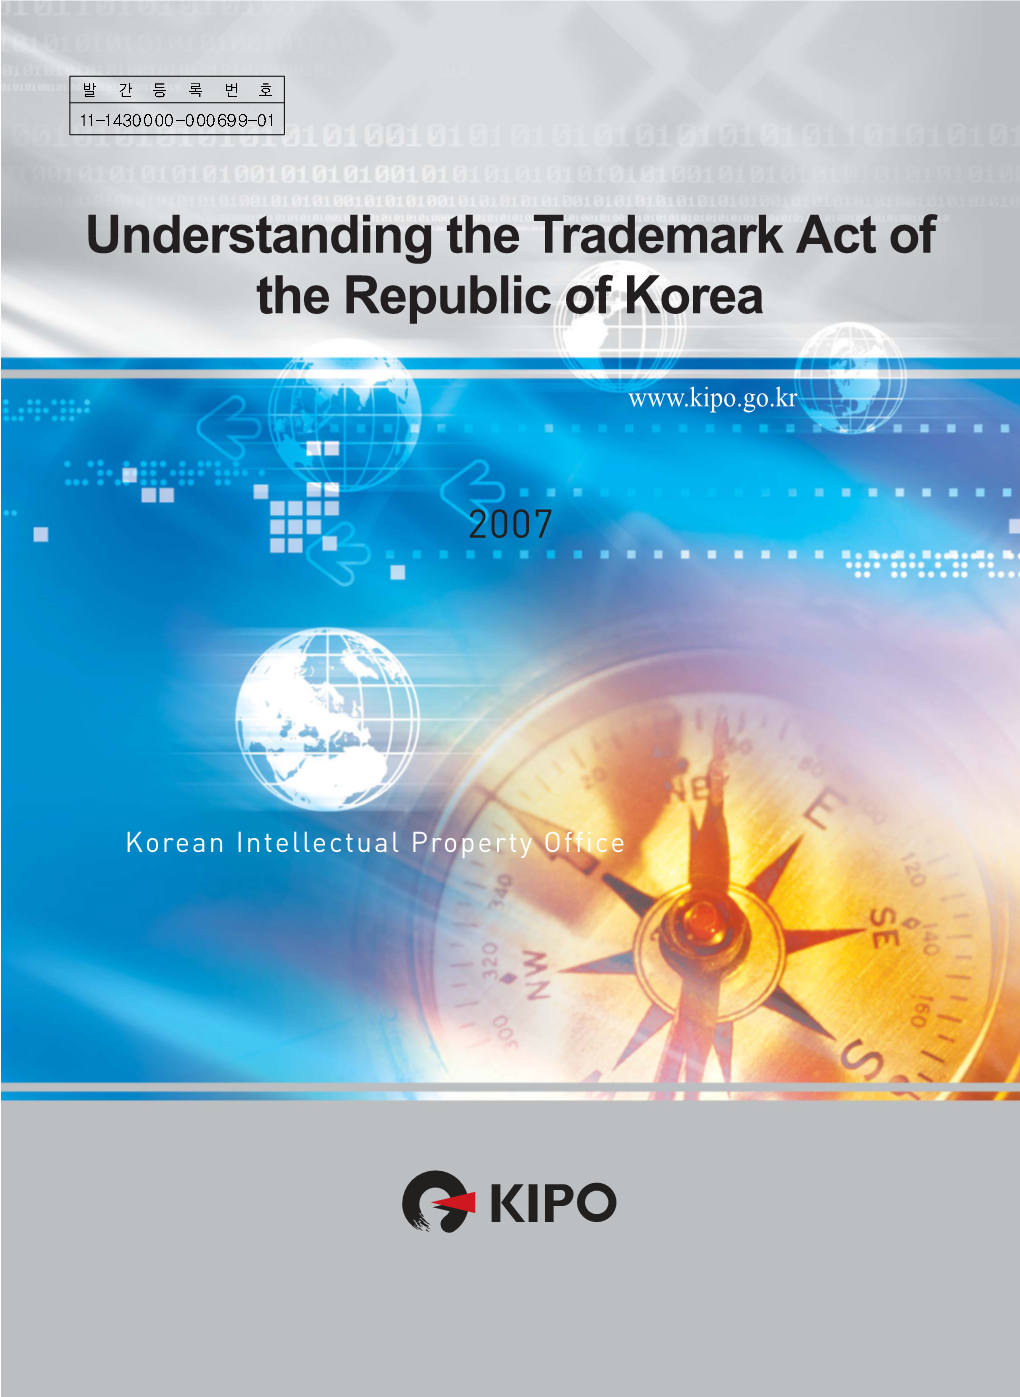 Understanding the Trademark Act of the Republic of Korea